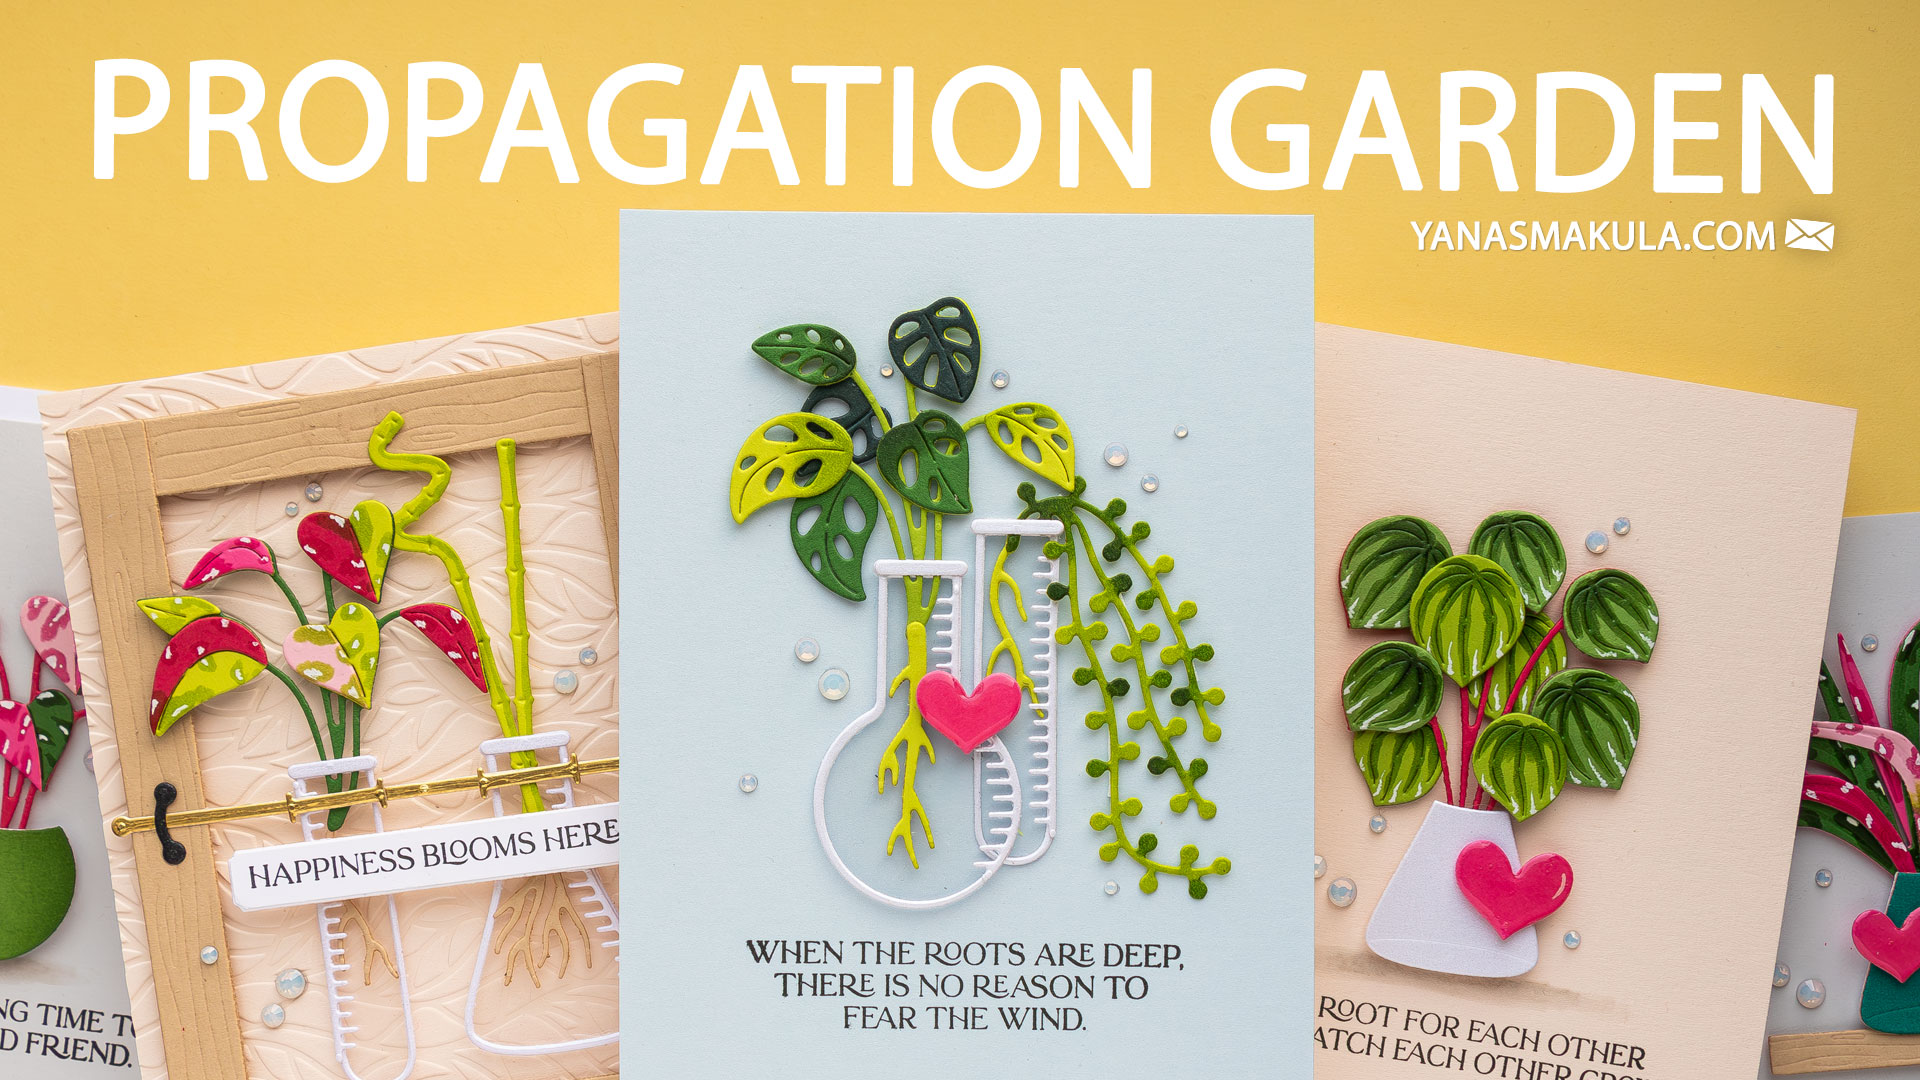 Spellbinders | Propagation Garden Cards. Video | Yana Smakula